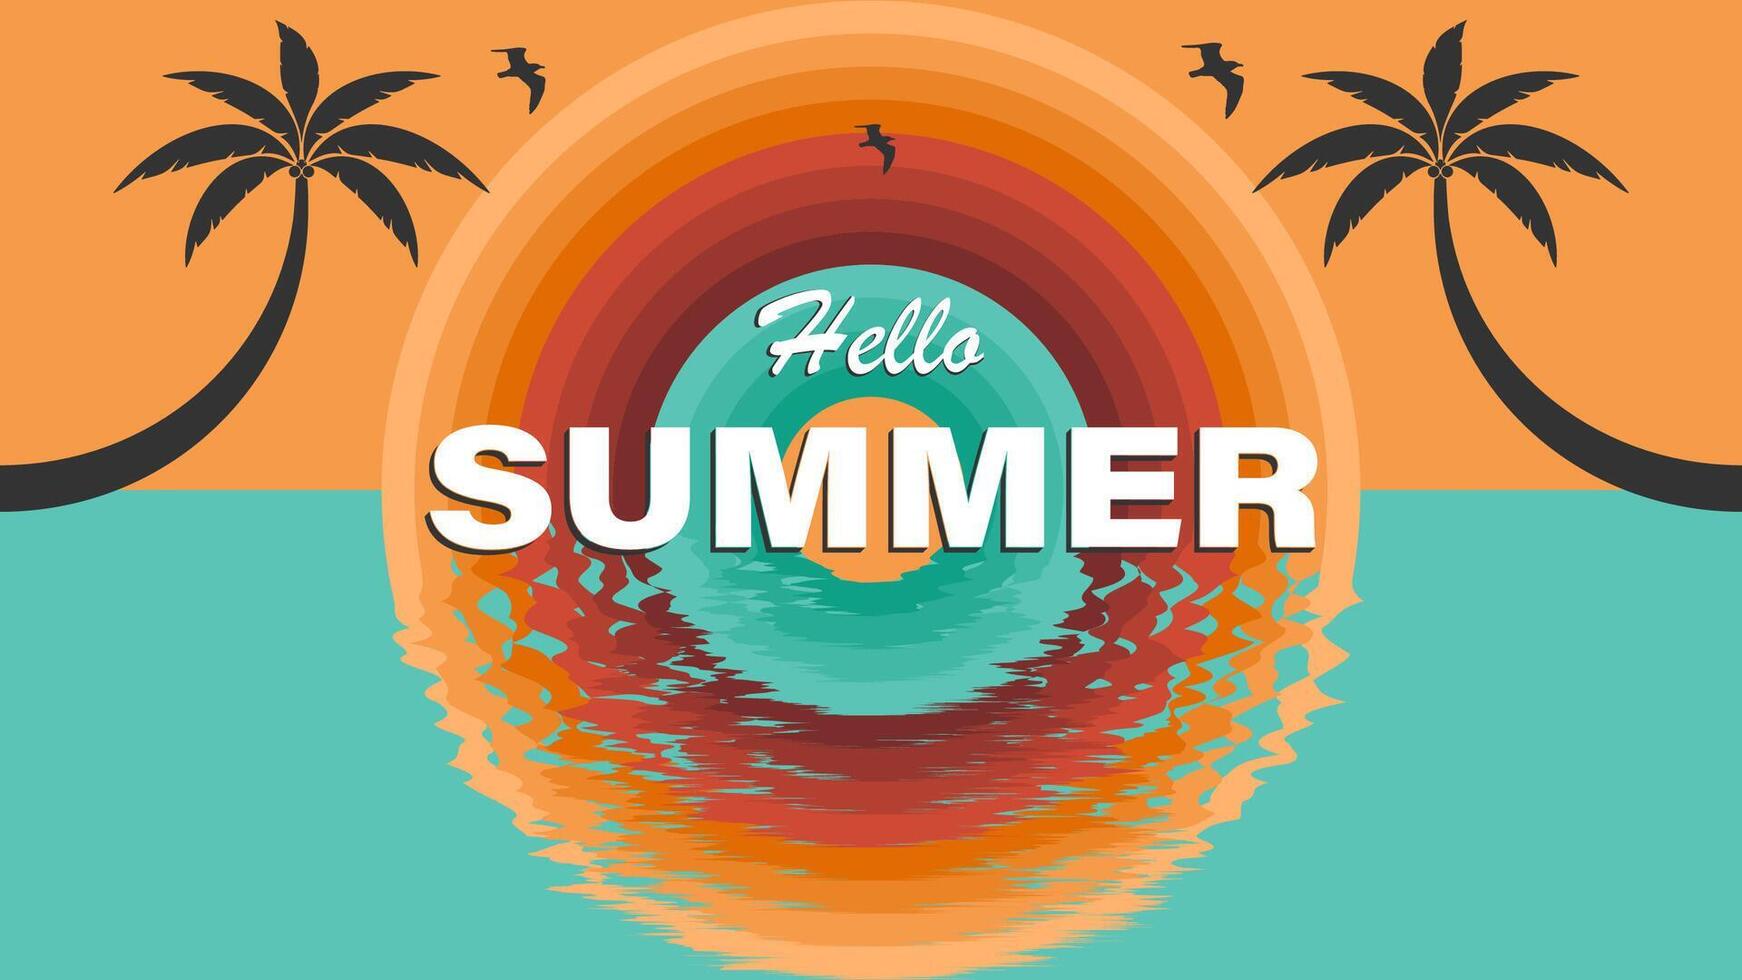 schön Sommer- Poster.abstrakt minimal Sommer- Hintergrund vektor